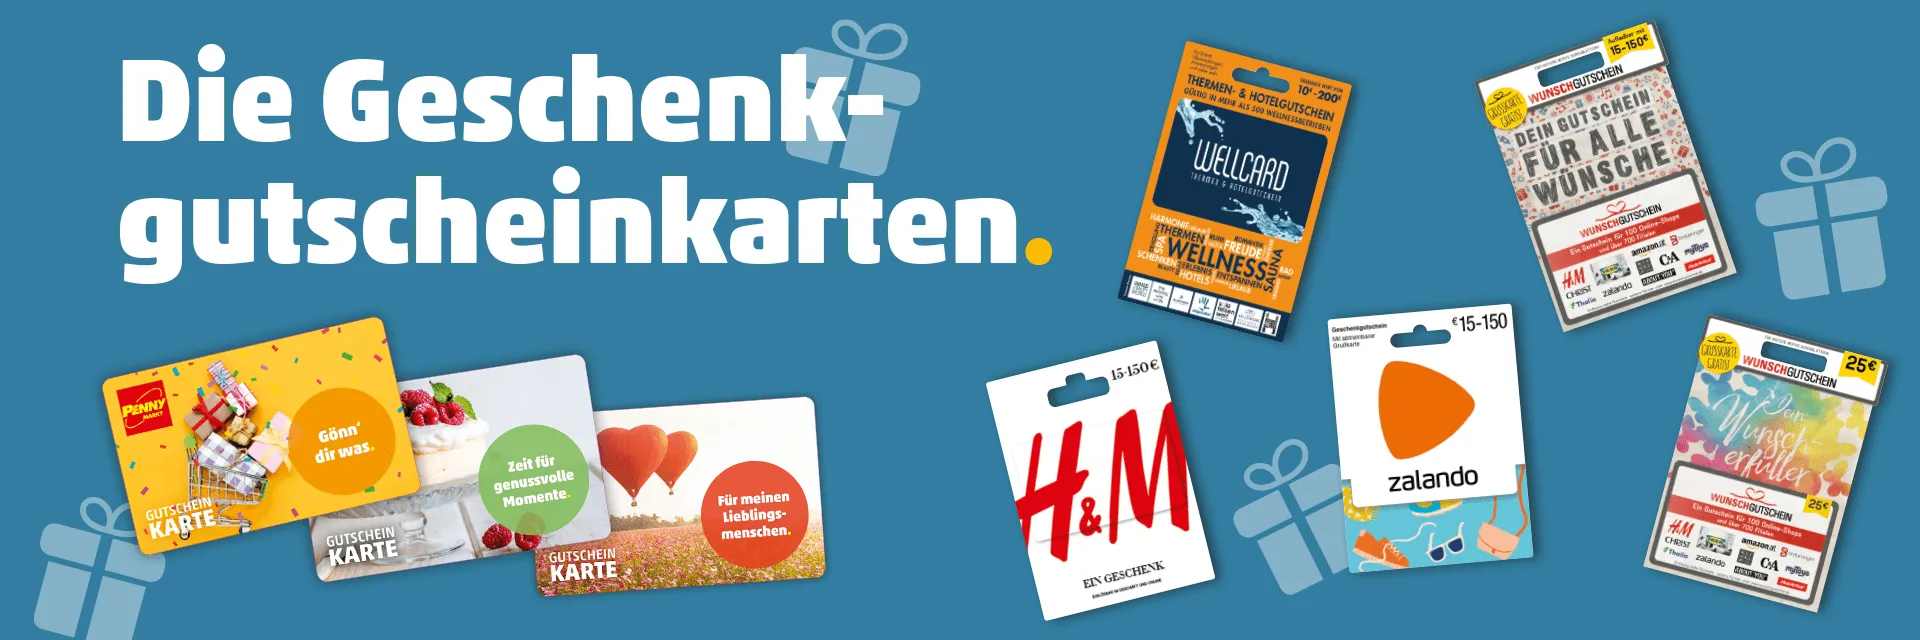 Gutscheine Wertkarten Verschenken | zum Markt & Österreich PENNY